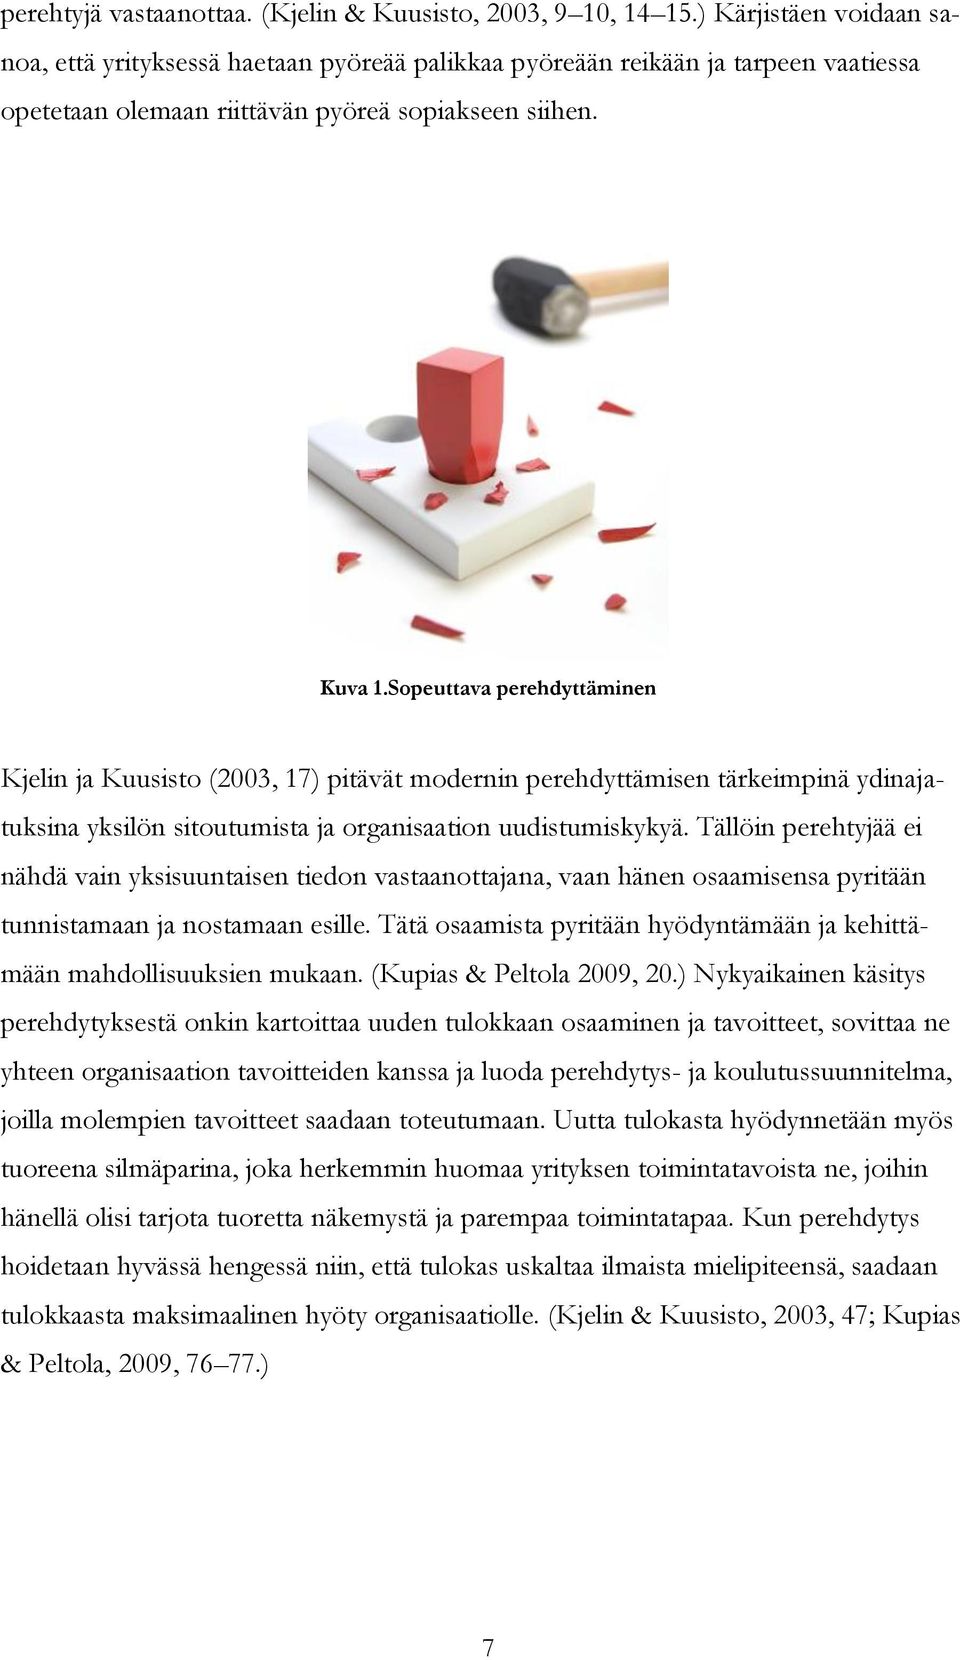 Sopeuttava perehdyttäminen Kjelin ja Kuusisto (2003, 17) pitävät modernin perehdyttämisen tärkeimpinä ydinajatuksina yksilön sitoutumista ja organisaation uudistumiskykyä.